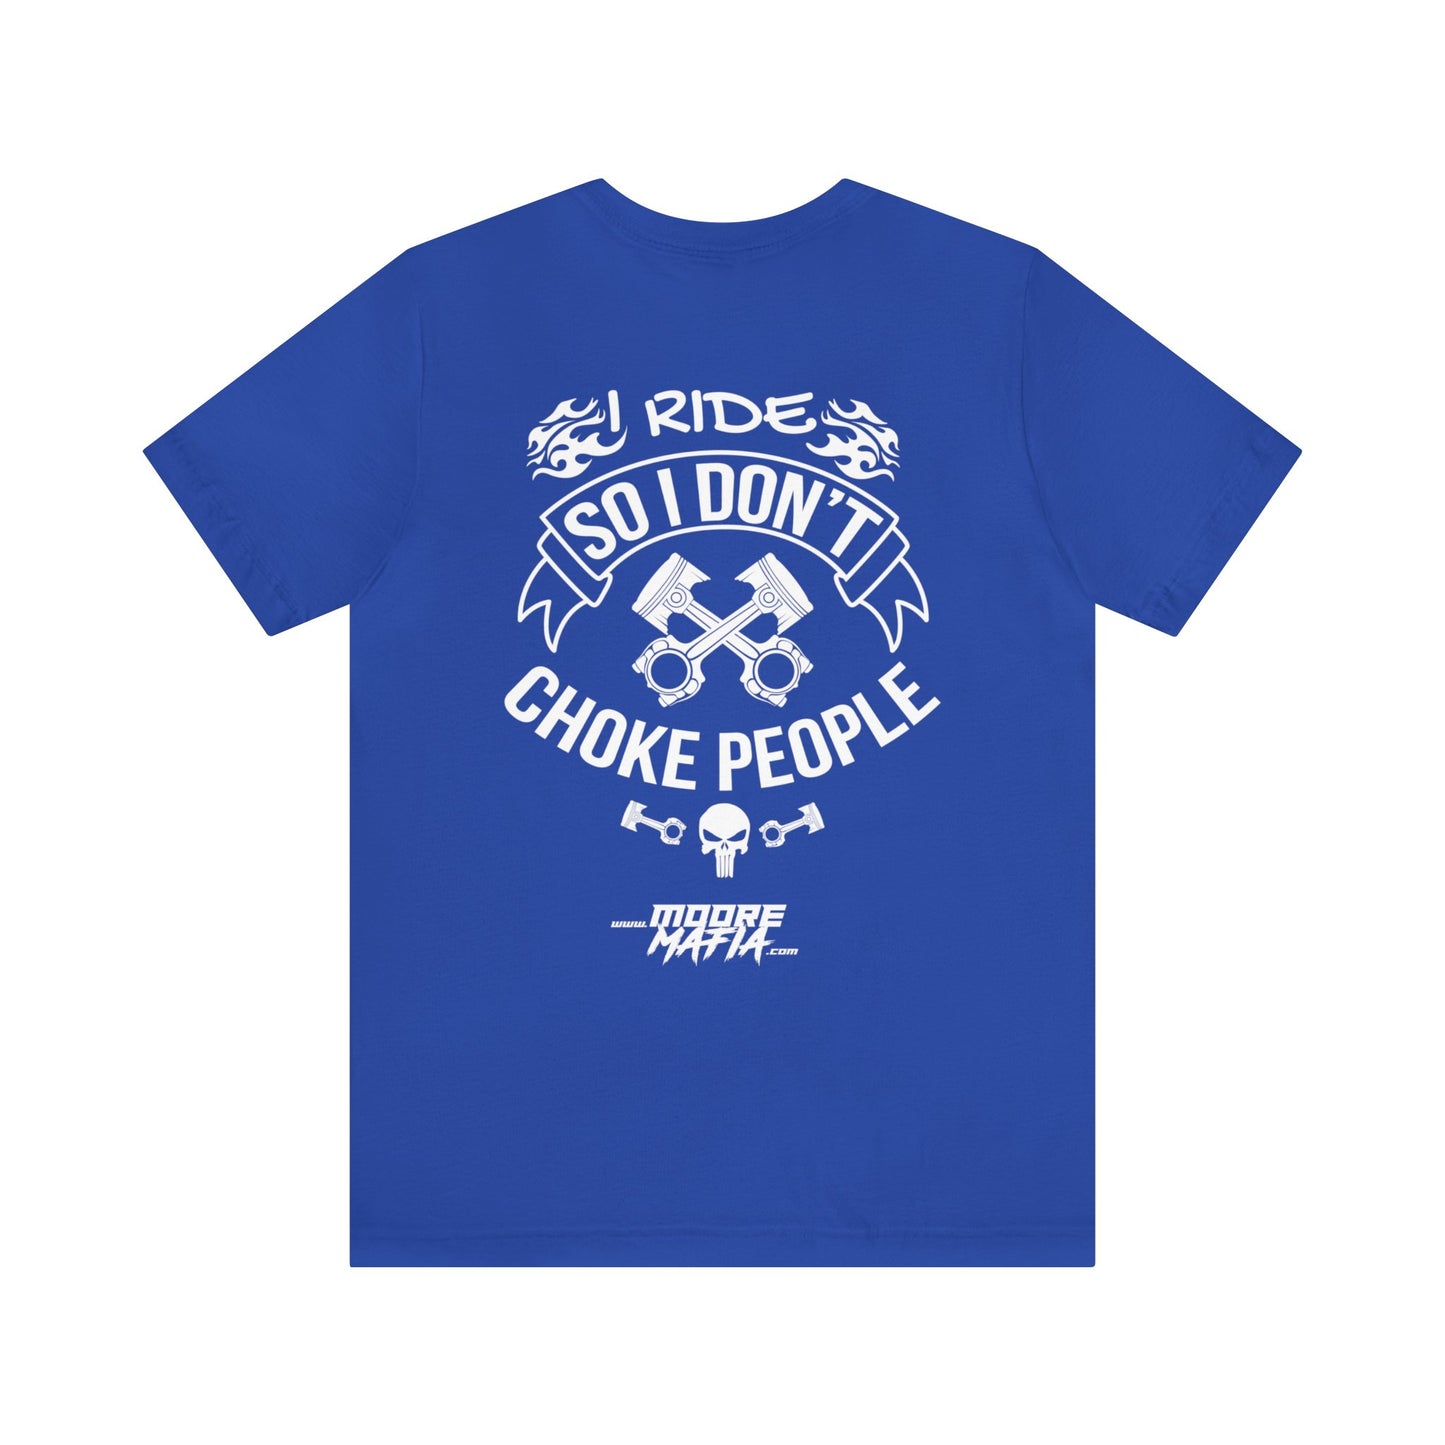 I Ride So I Don't Choke People Unisex T-Shirt